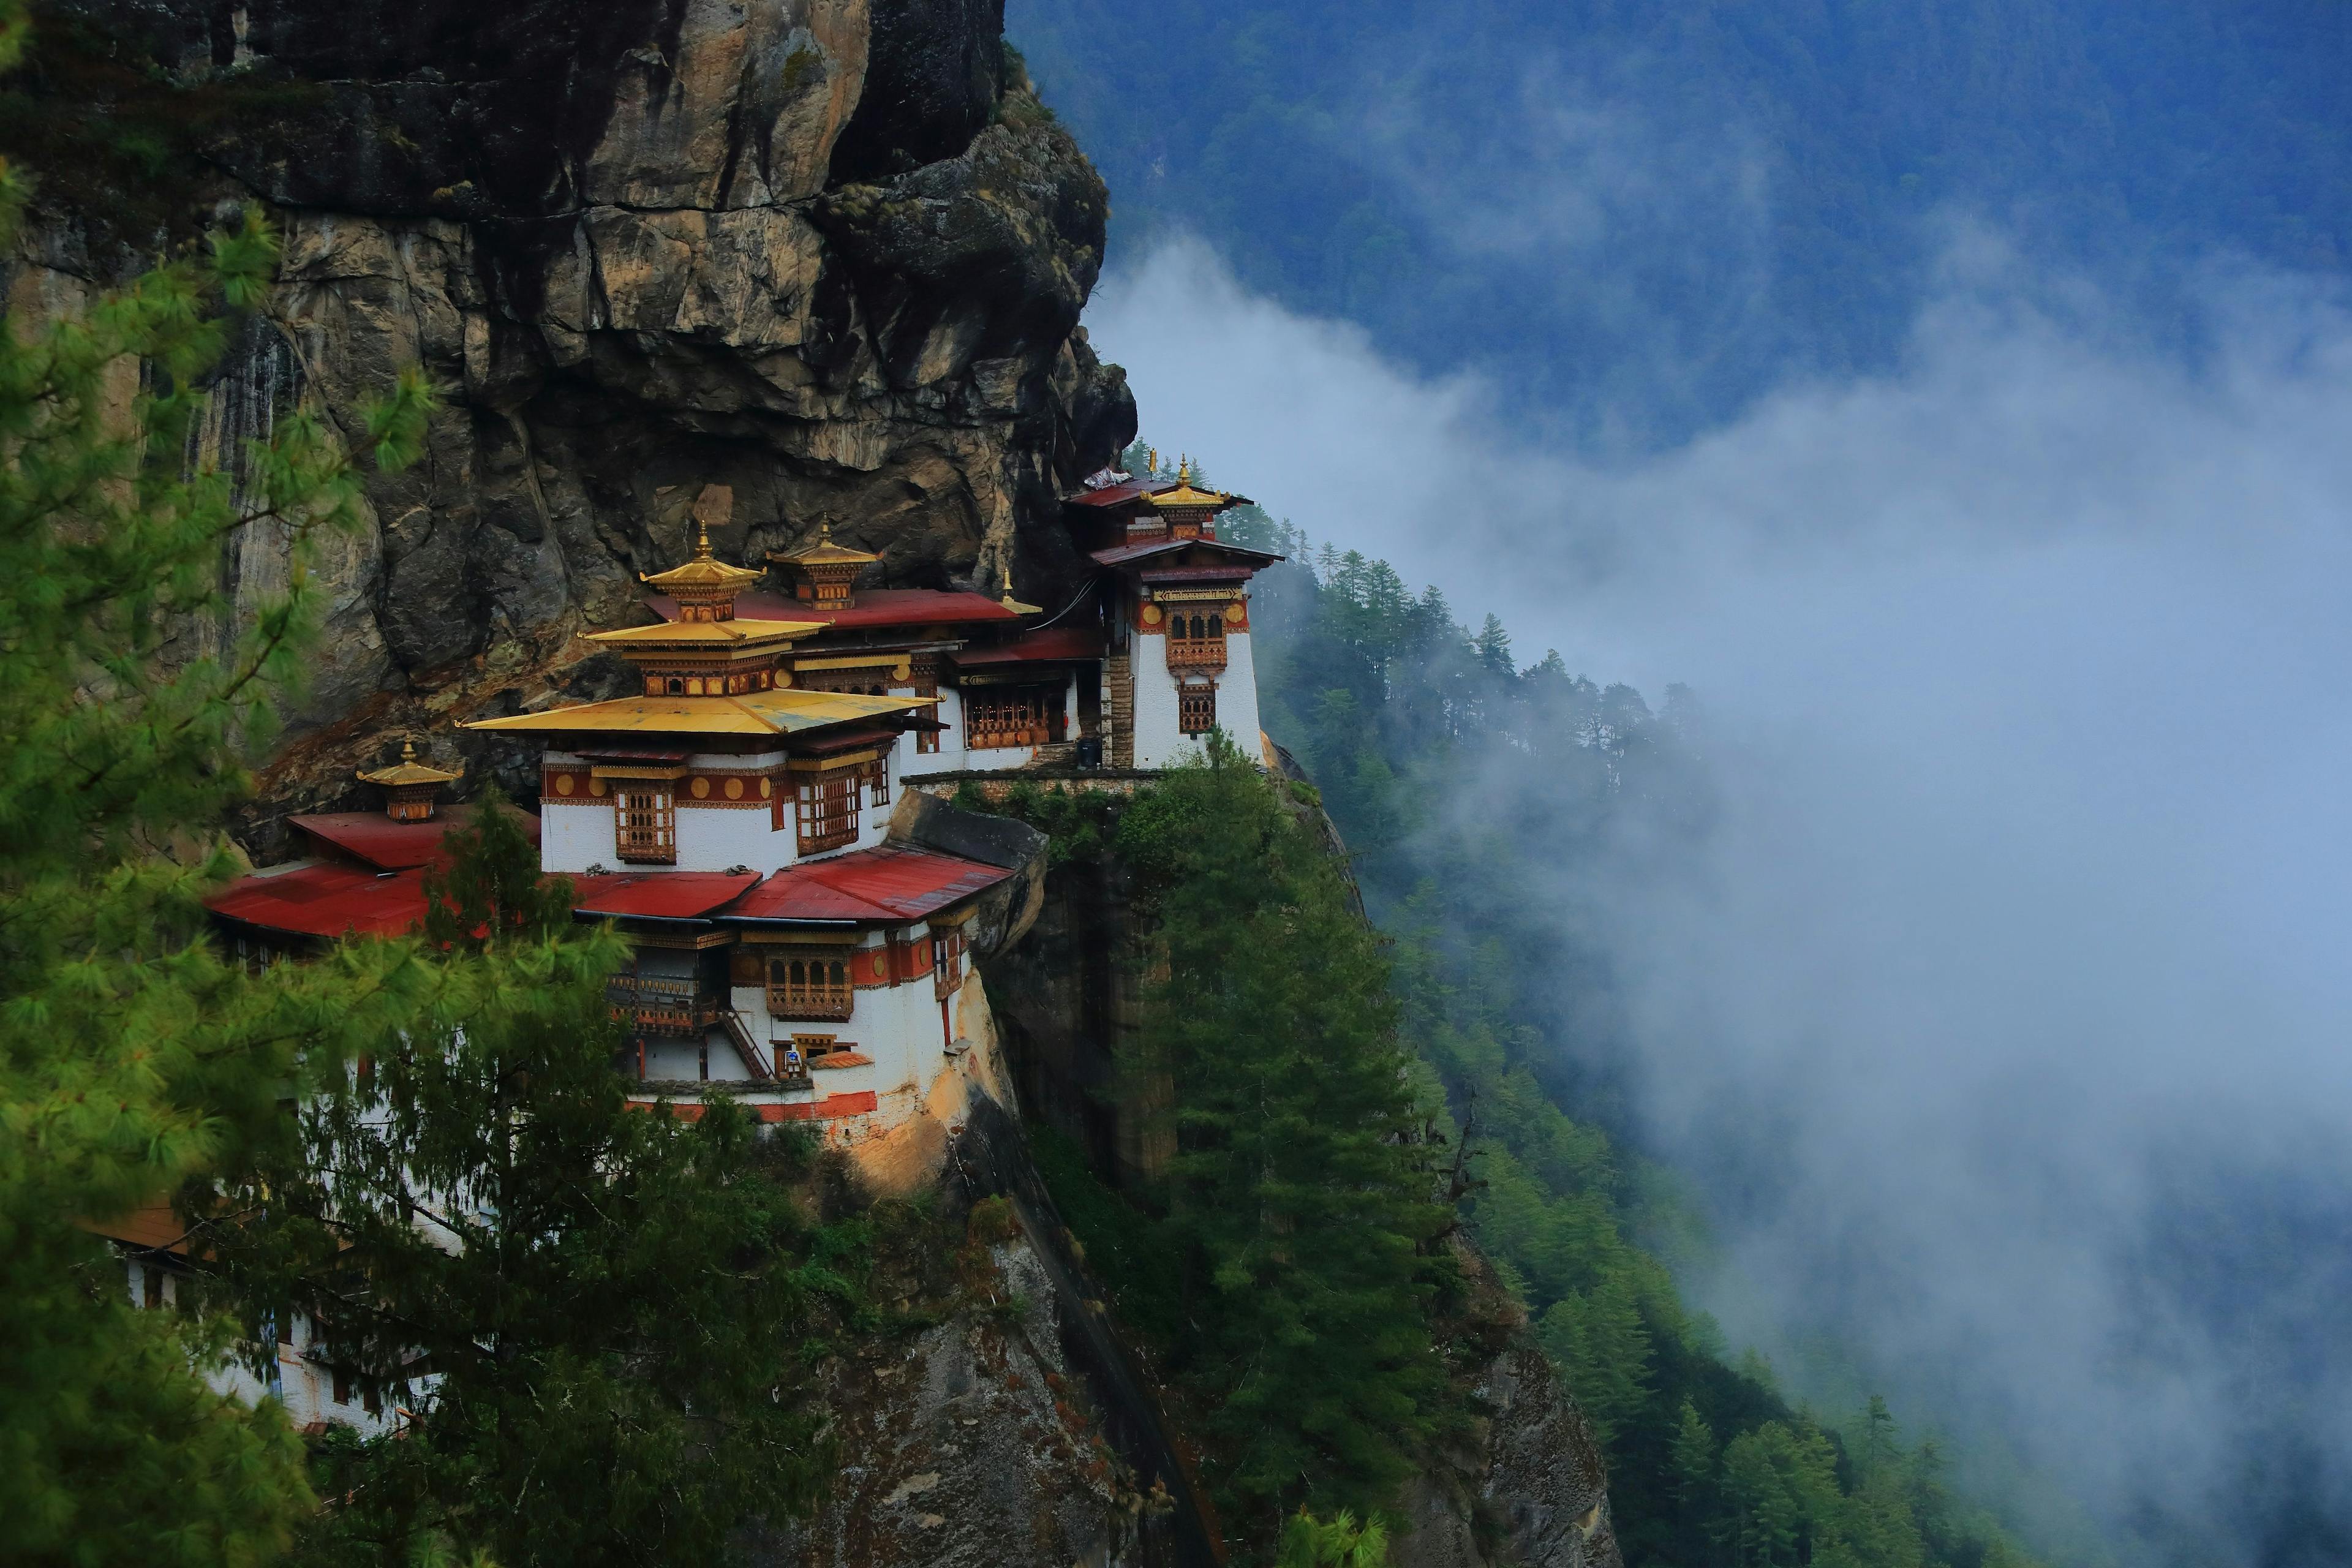 Tiger's Nest monastery in Bhutan.